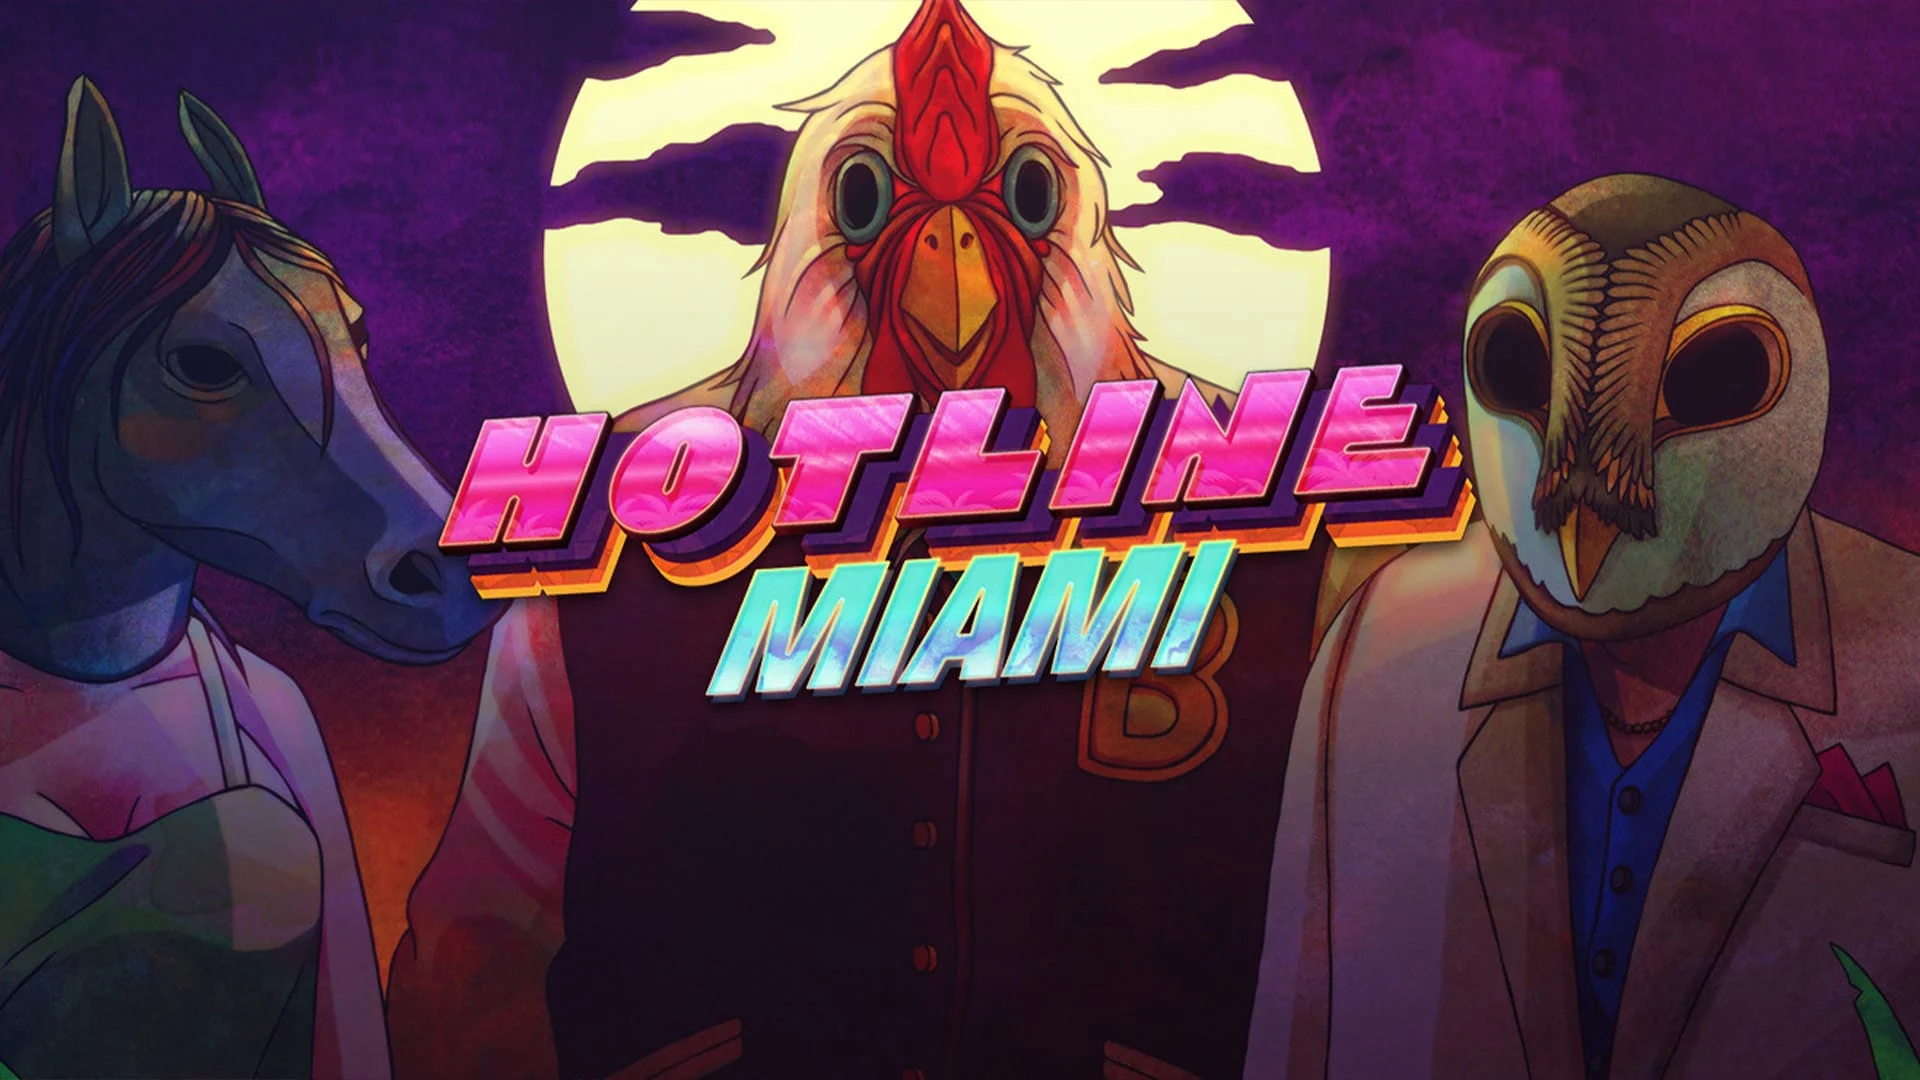 Hotline Miami 1 і 2, ймовірно, отримають нативні порти на PlayStation 5